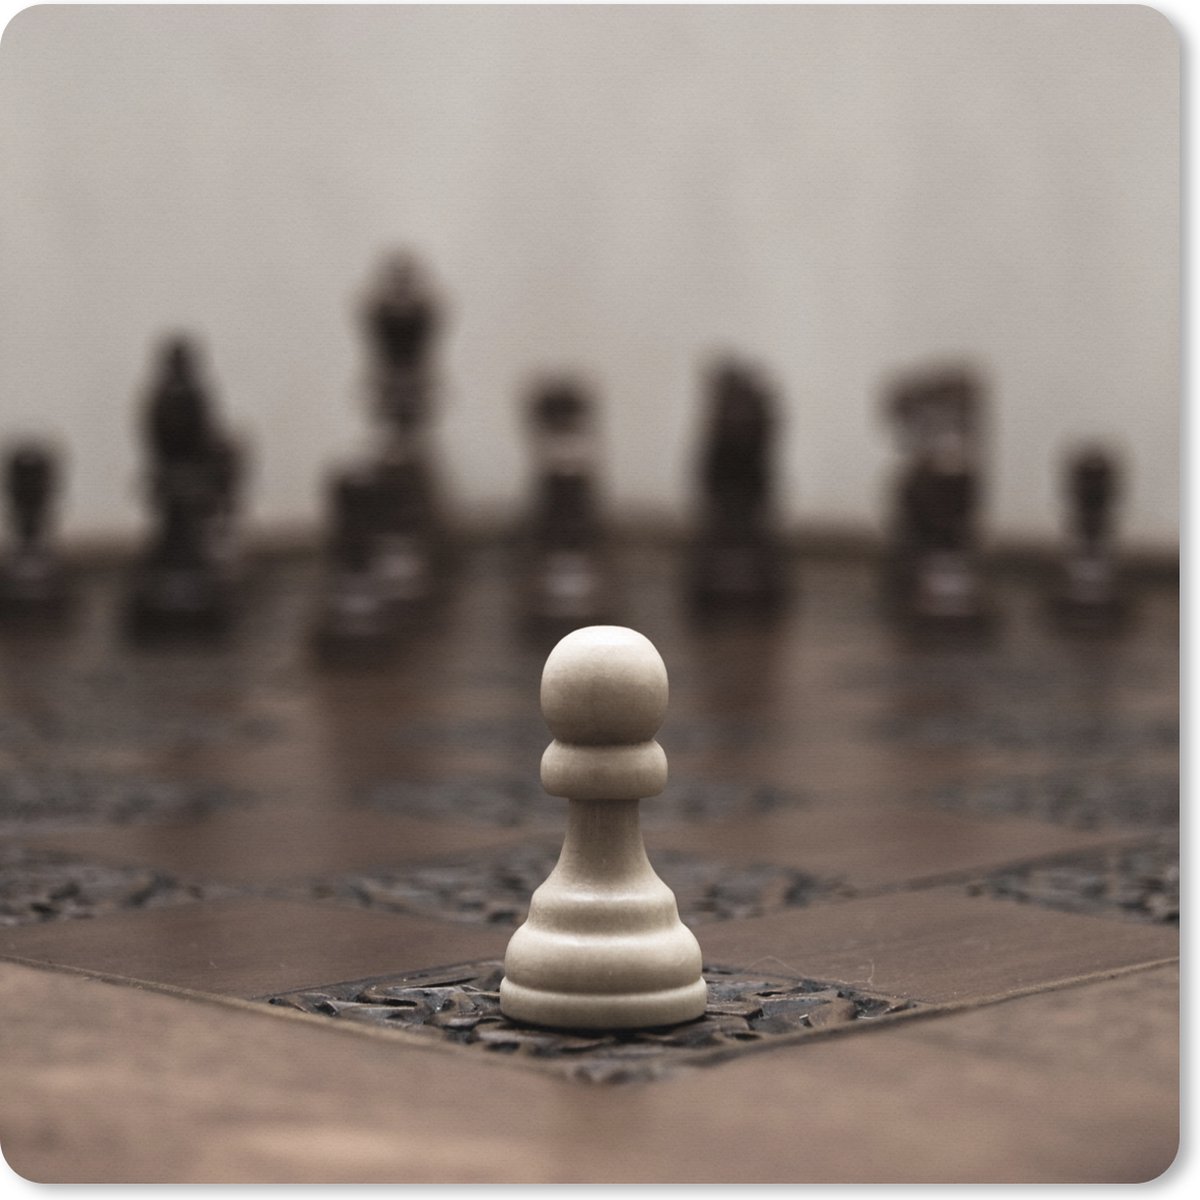 Muismat XXL - Bureau onderlegger - Bureau mat - Wit verliest met schaken - 50x50 cm - XXL muismat